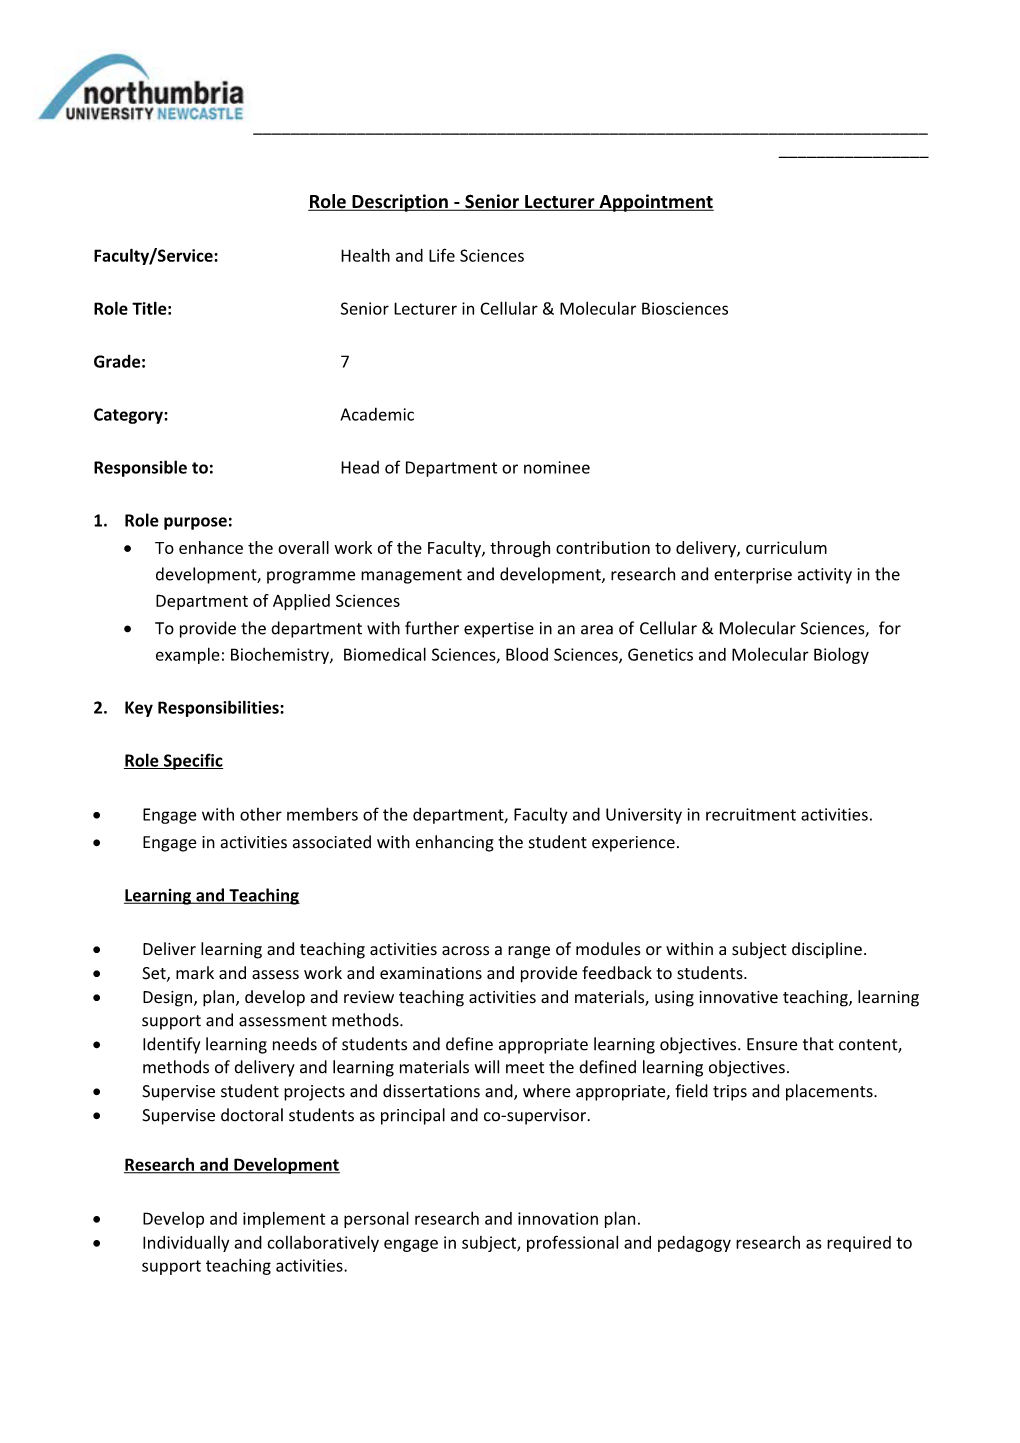 Role Description - Senior Lecturer Appointment